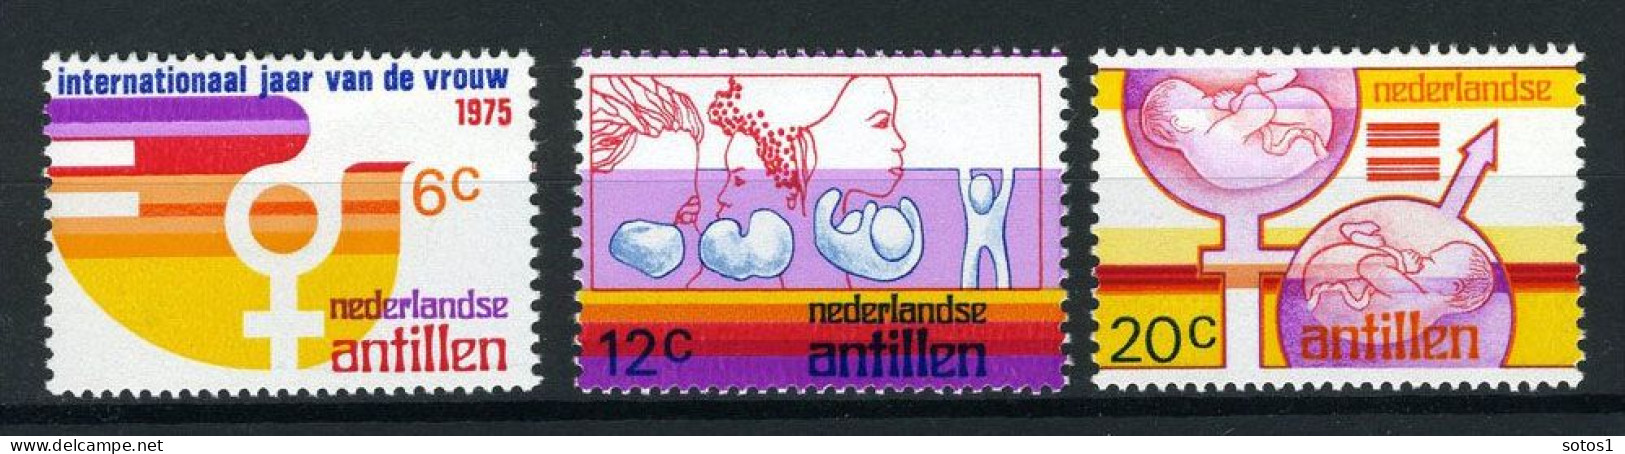 NL. ANTILLEN 512/514 MH 1975 - Internationaal Jaar Van De Vrouw. - Curaçao, Antilles Neérlandaises, Aruba